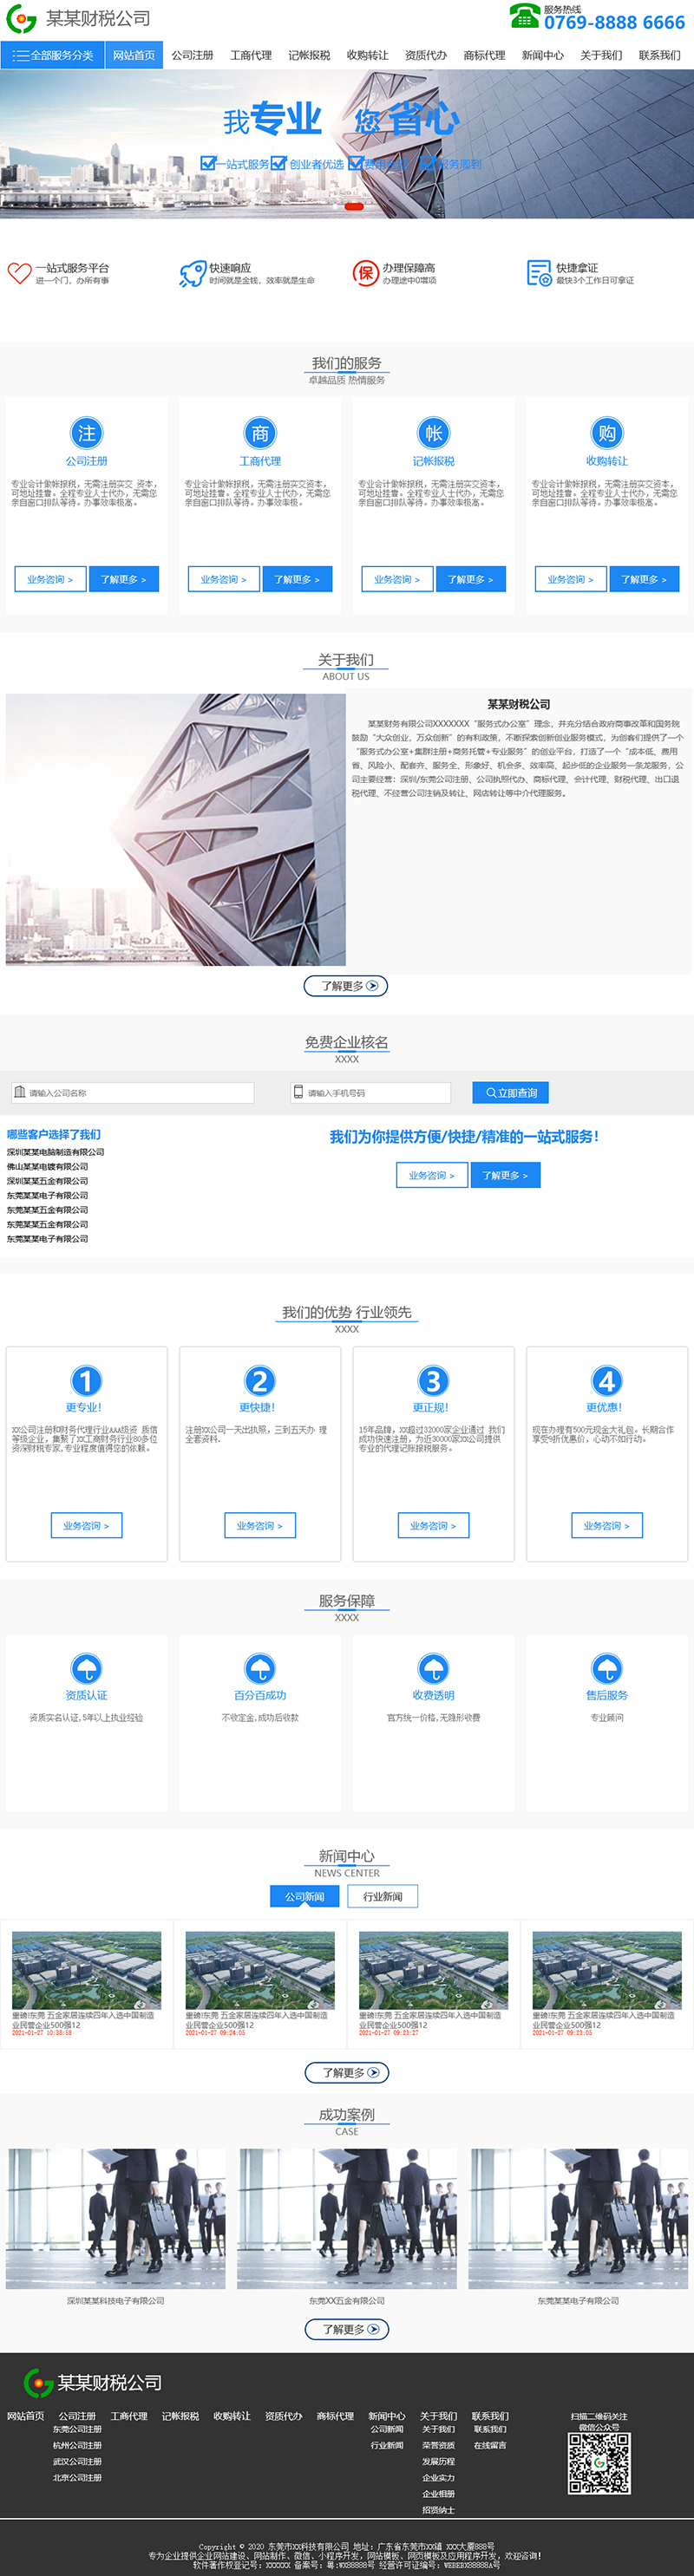 深圳宇行科技-财务/财税公司通用响应式模板网站设计模板